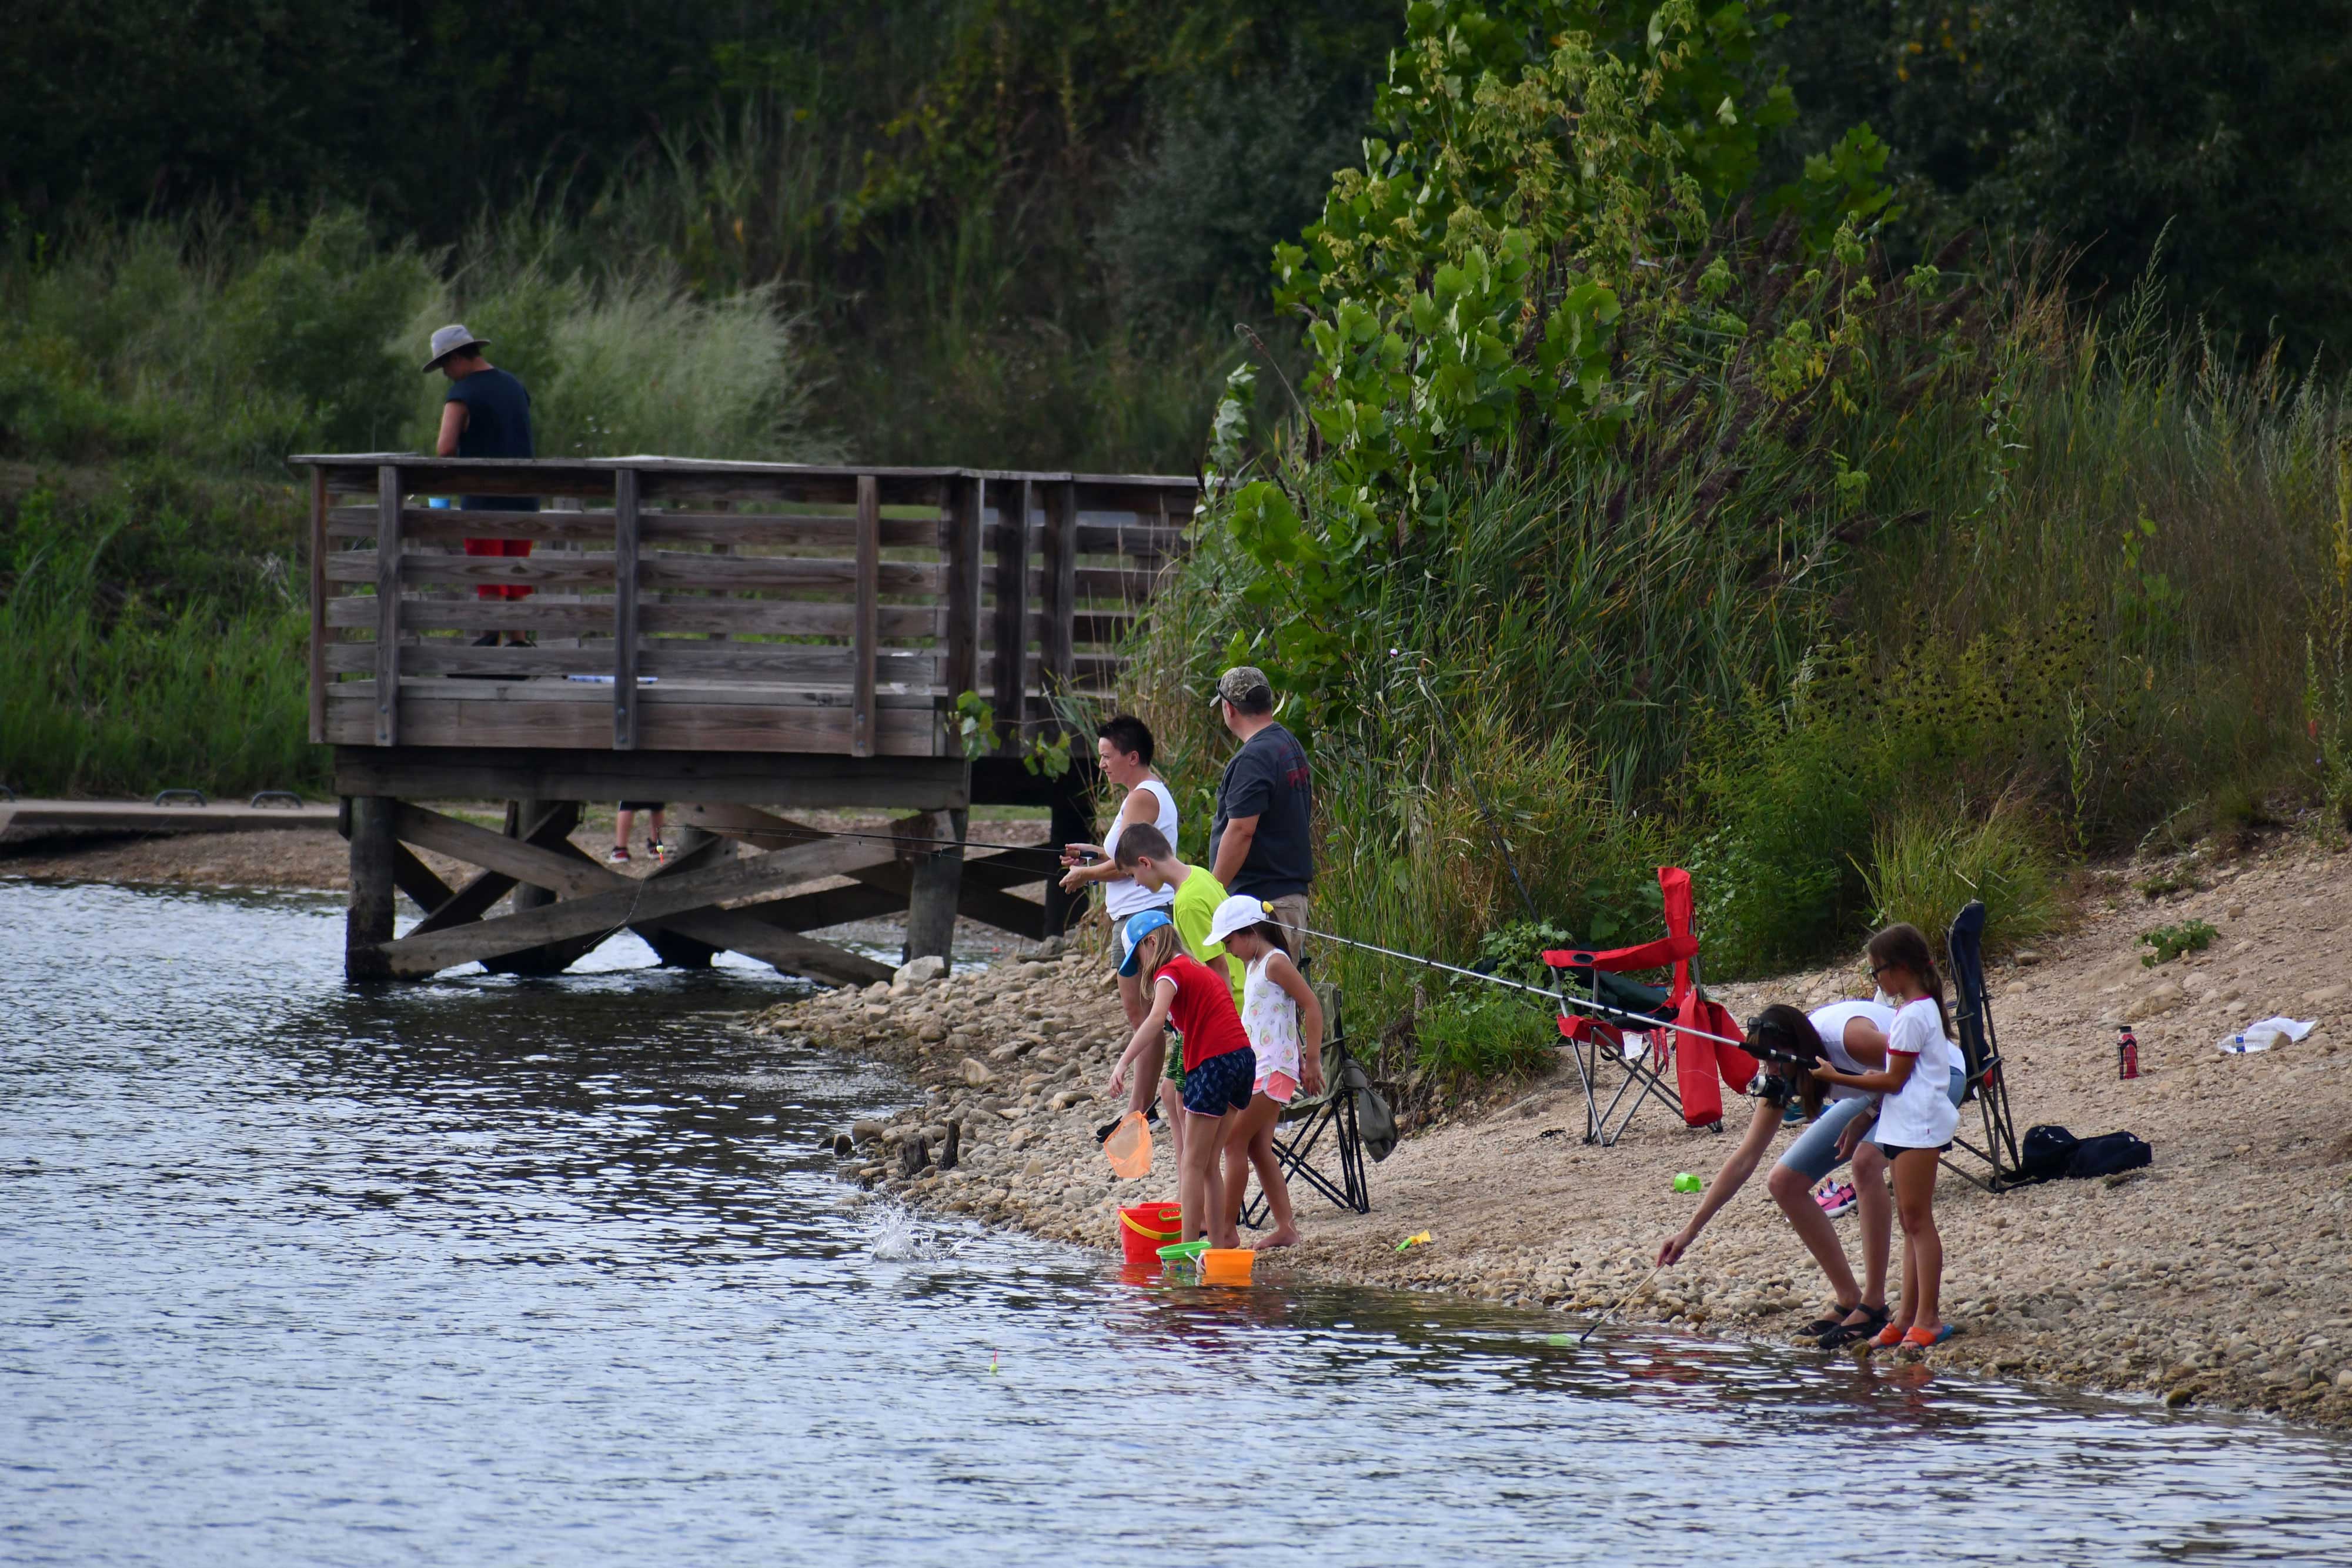 Preserve visitors fishing along the shore.